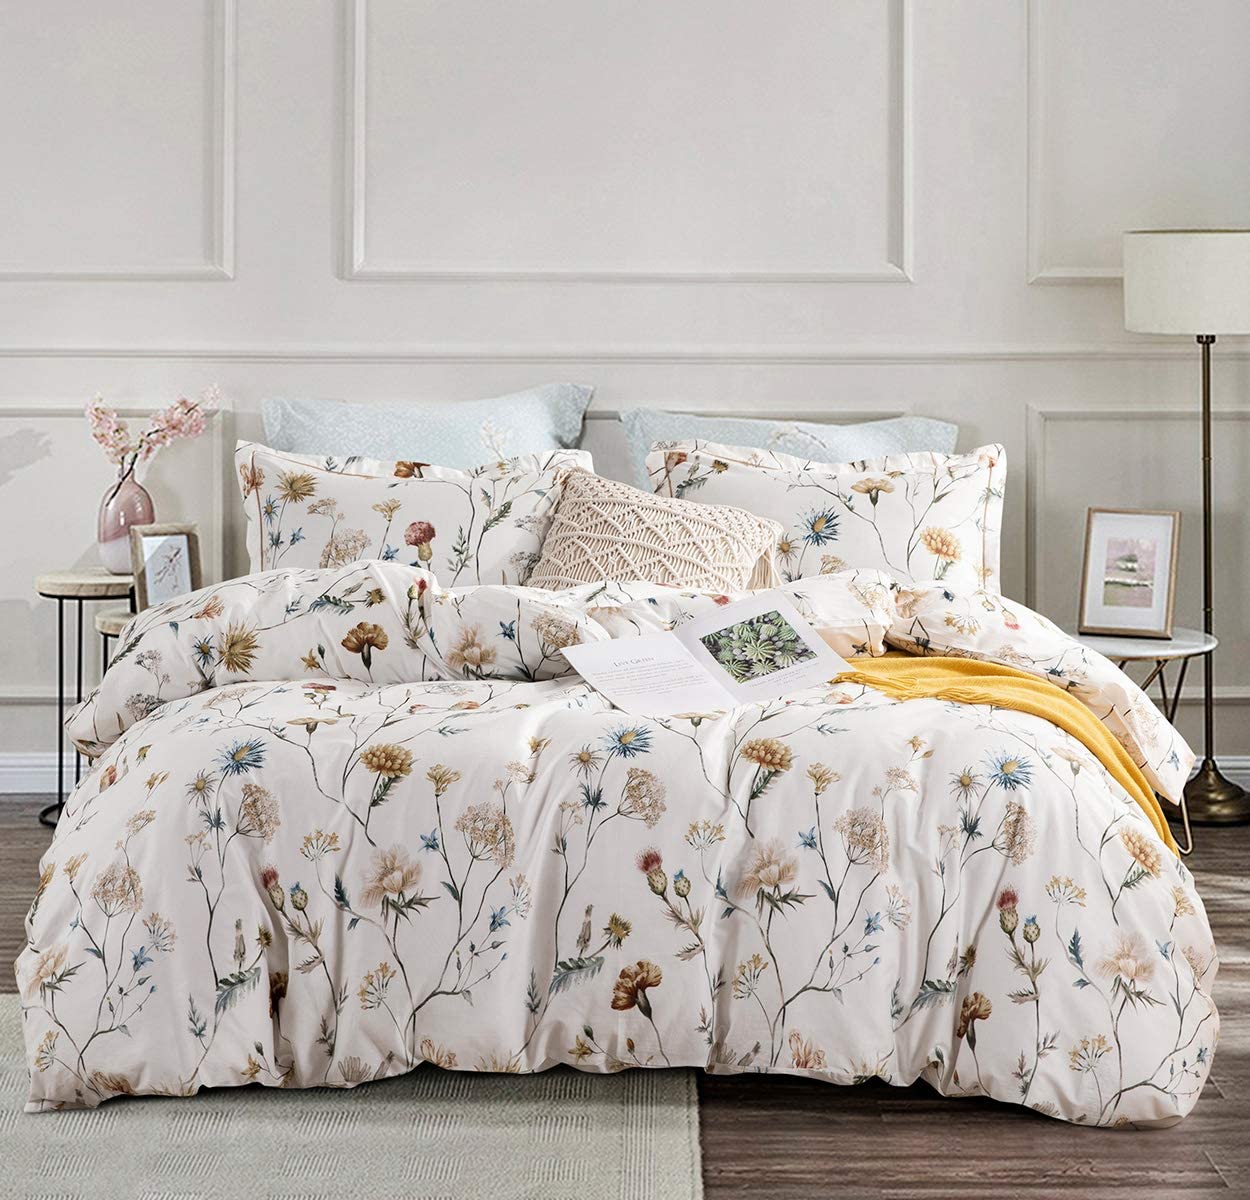 SLEEPBELLA King Size Comforter Set Elegant Yellow Floral Pattern ...